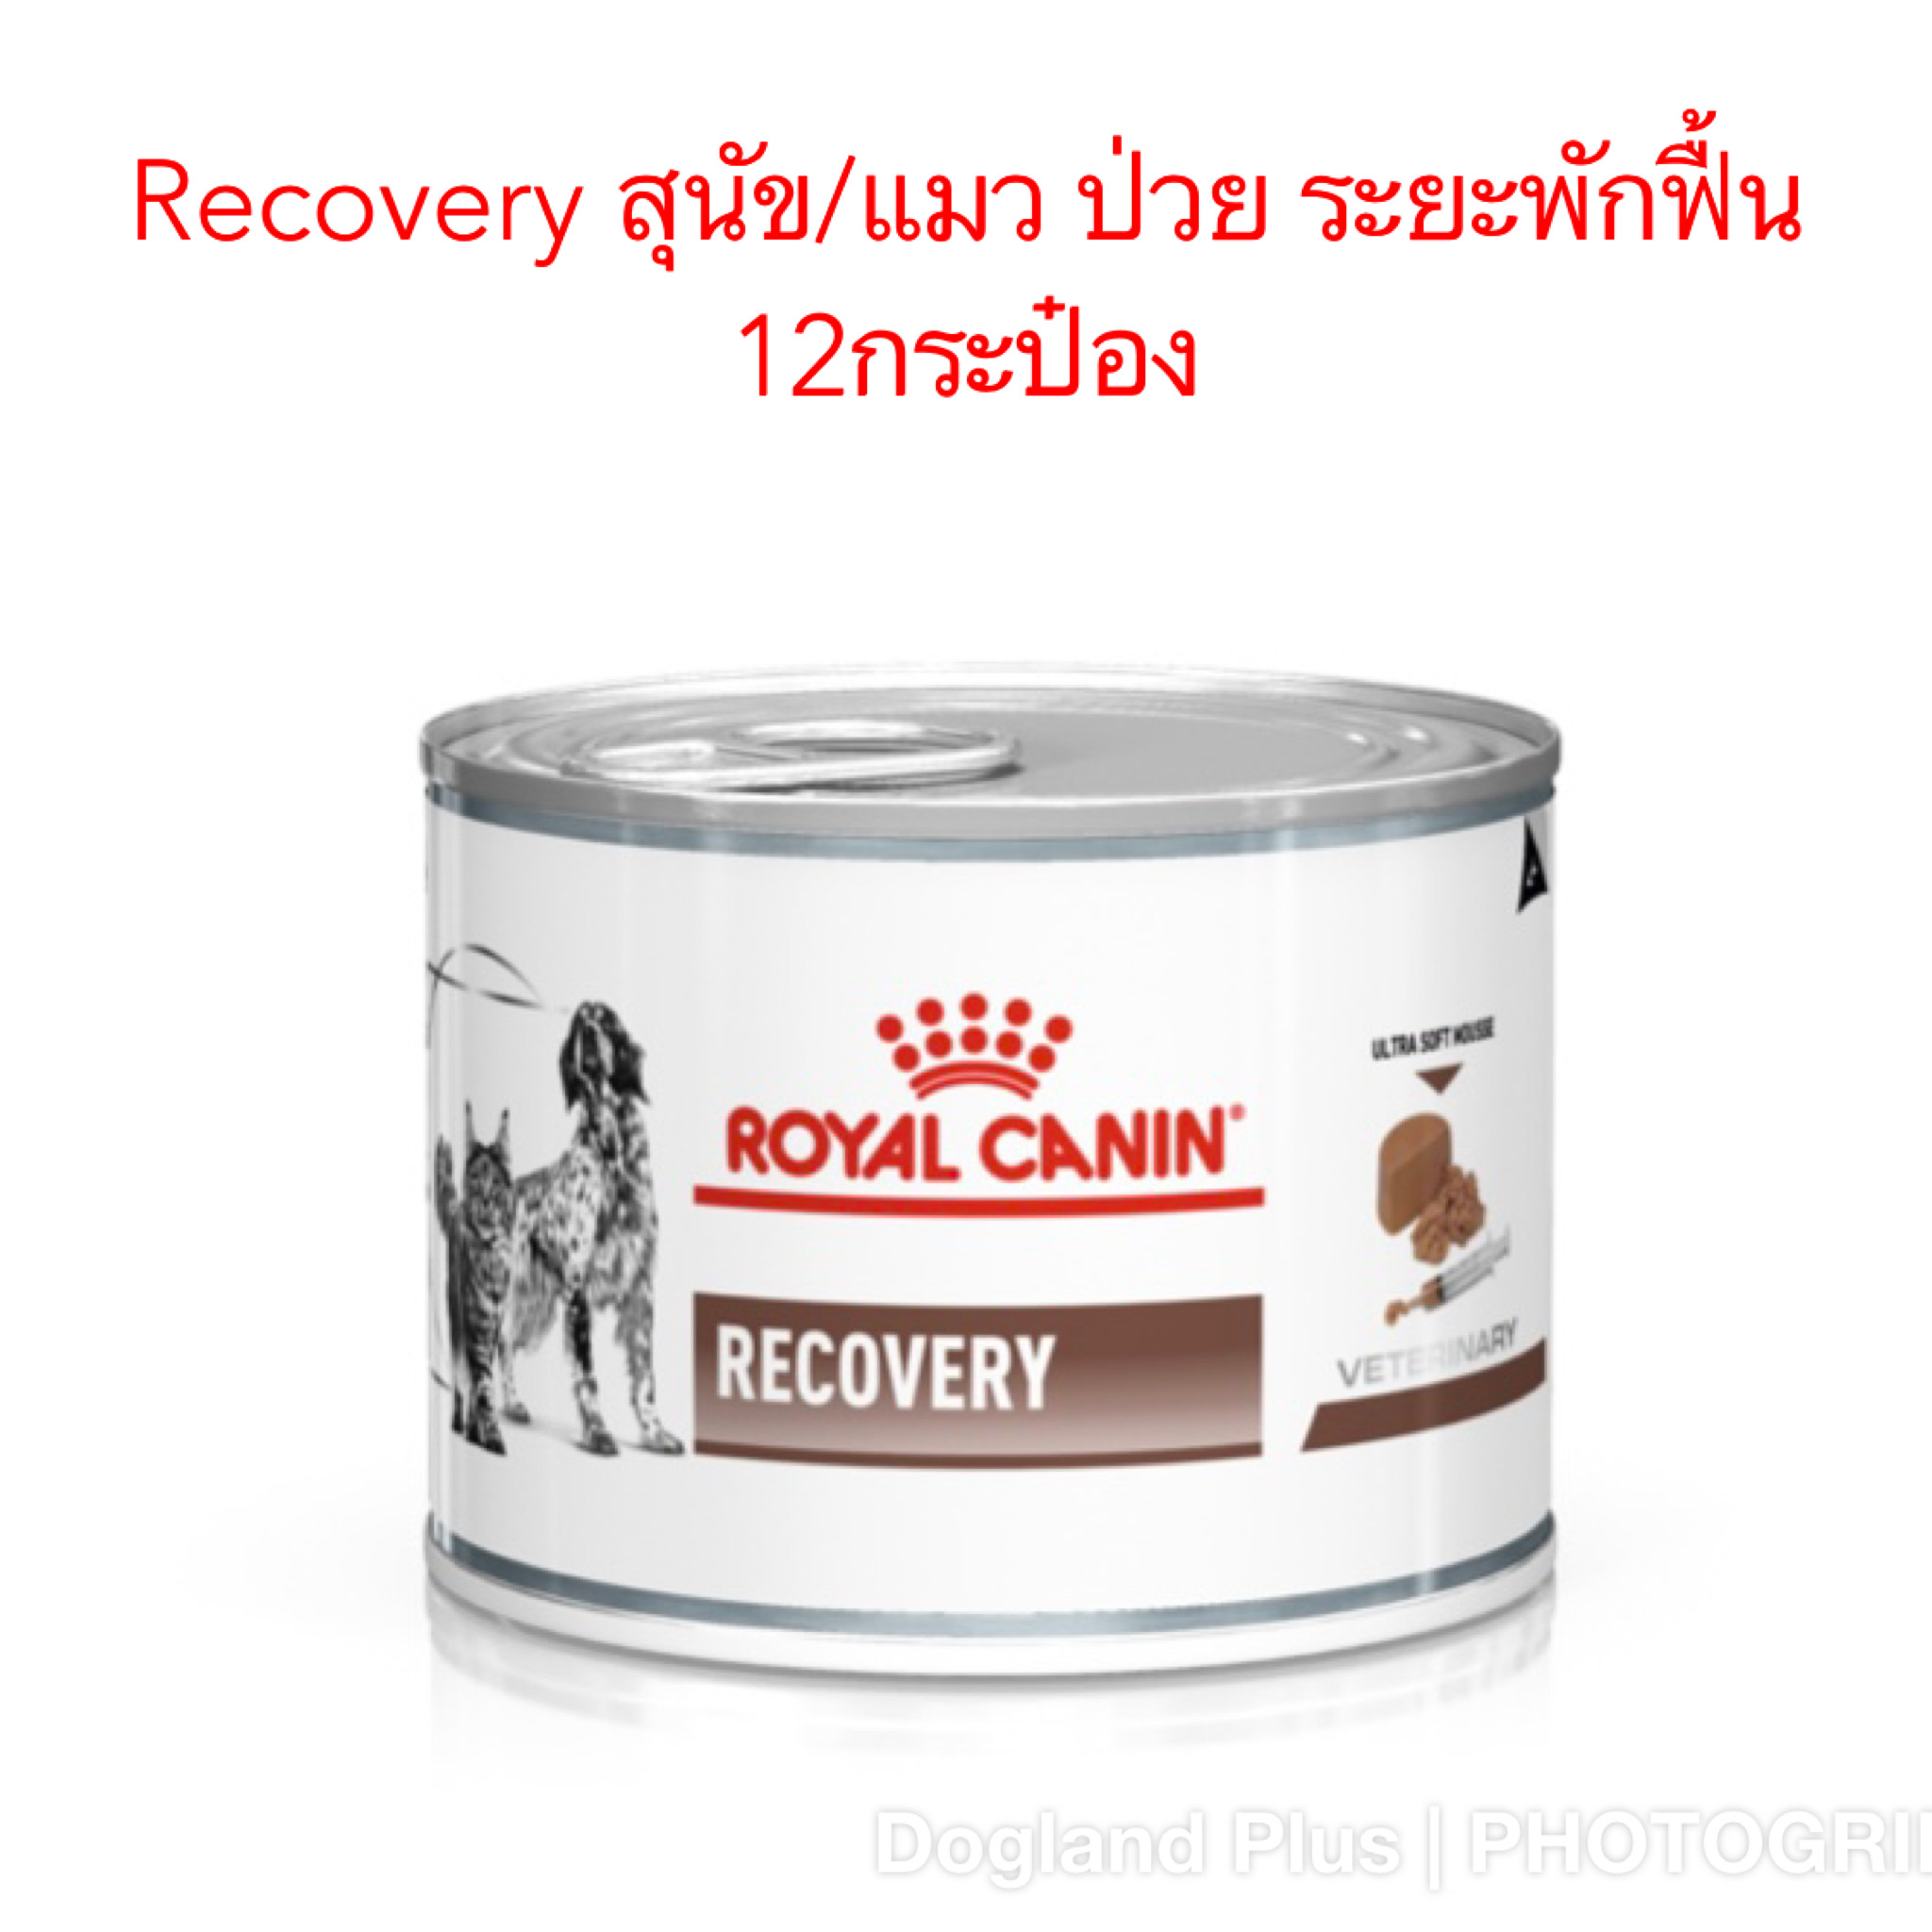 Royal Canin Recovery อาหารสัตว์ป่วย พักฟื้น สุนัข/แมว กระป๋อง 195 กรัมX12 กระป๋อง